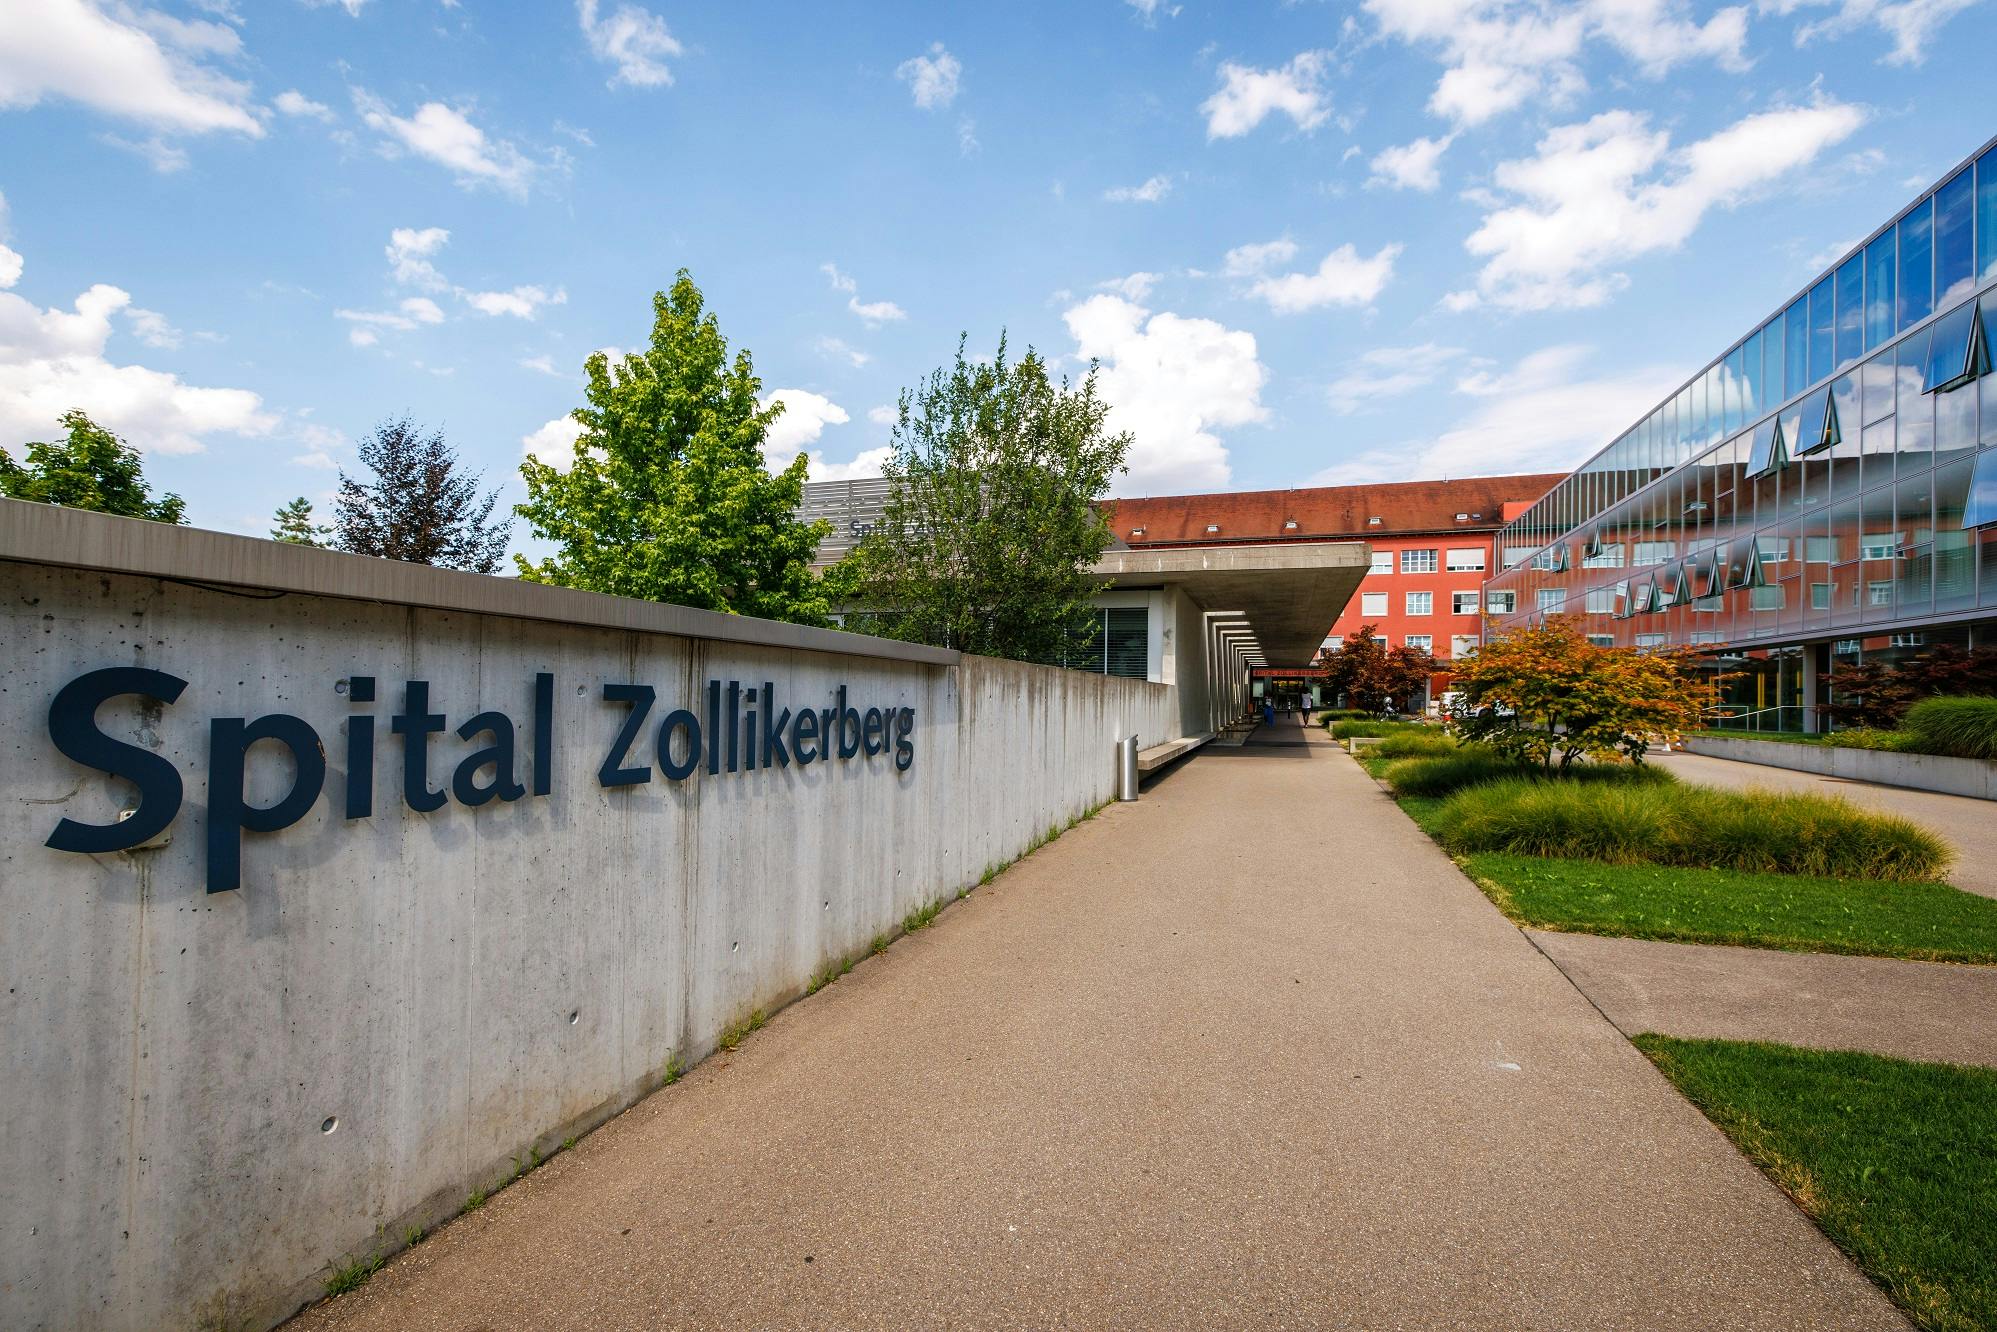 Außenansicht des Spitals Zollikerberg mit Weg und begrünter Umgebung bei sonnigem Wetter.